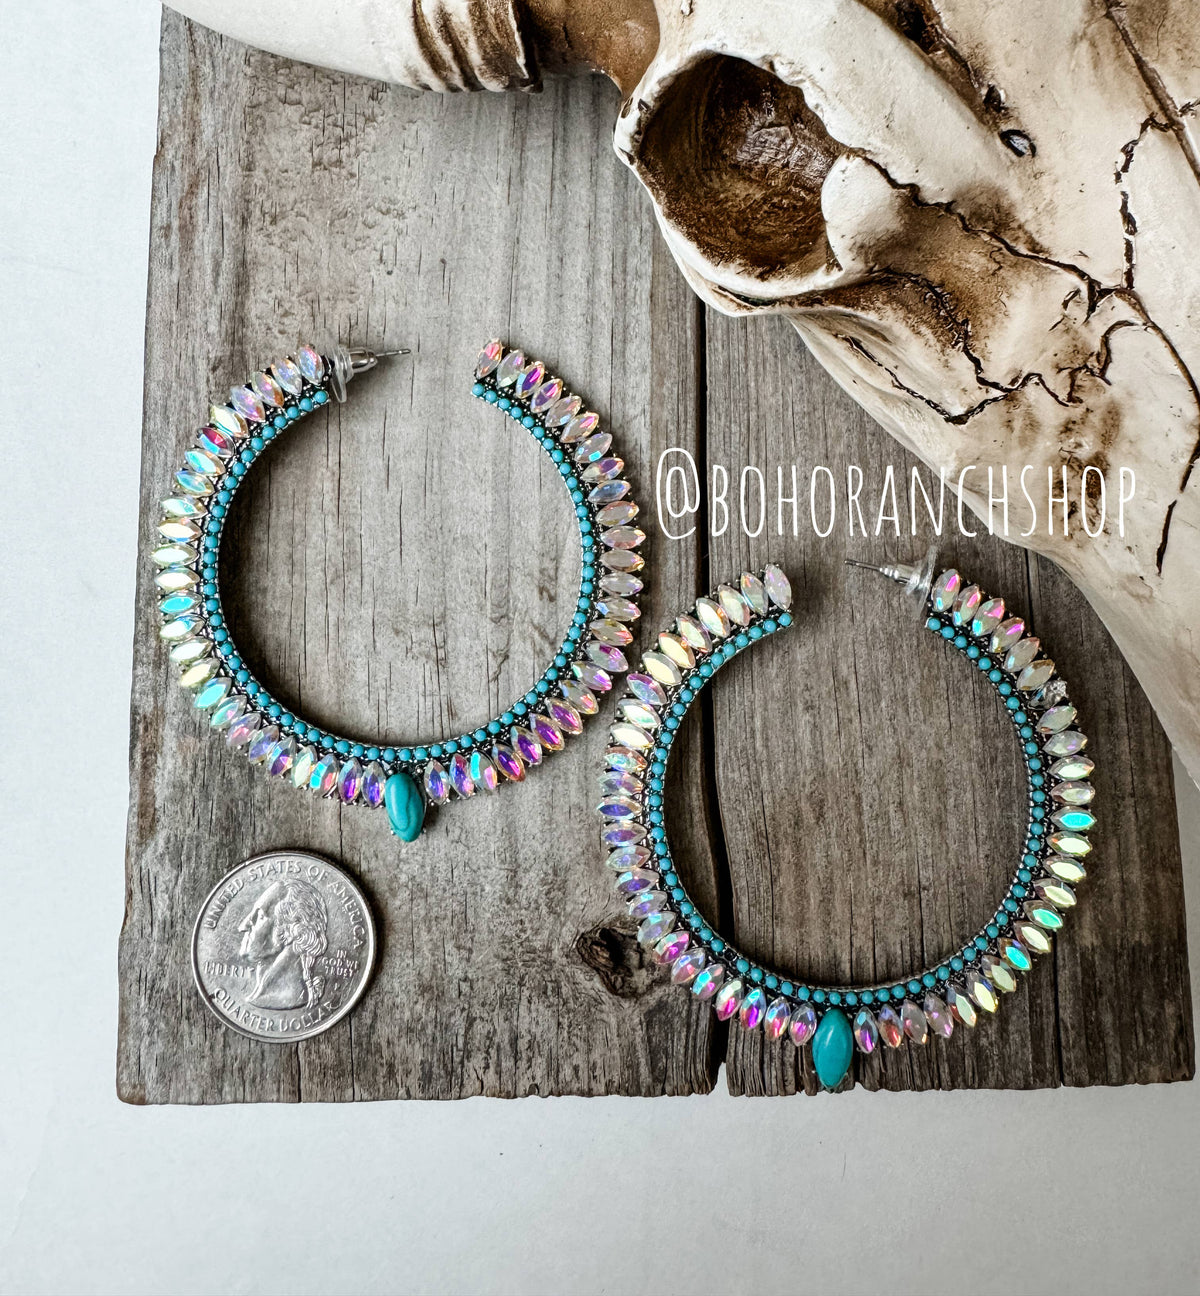 Boho Ranch Shop - Western Glass Bling Stone Post Hoop Earrings